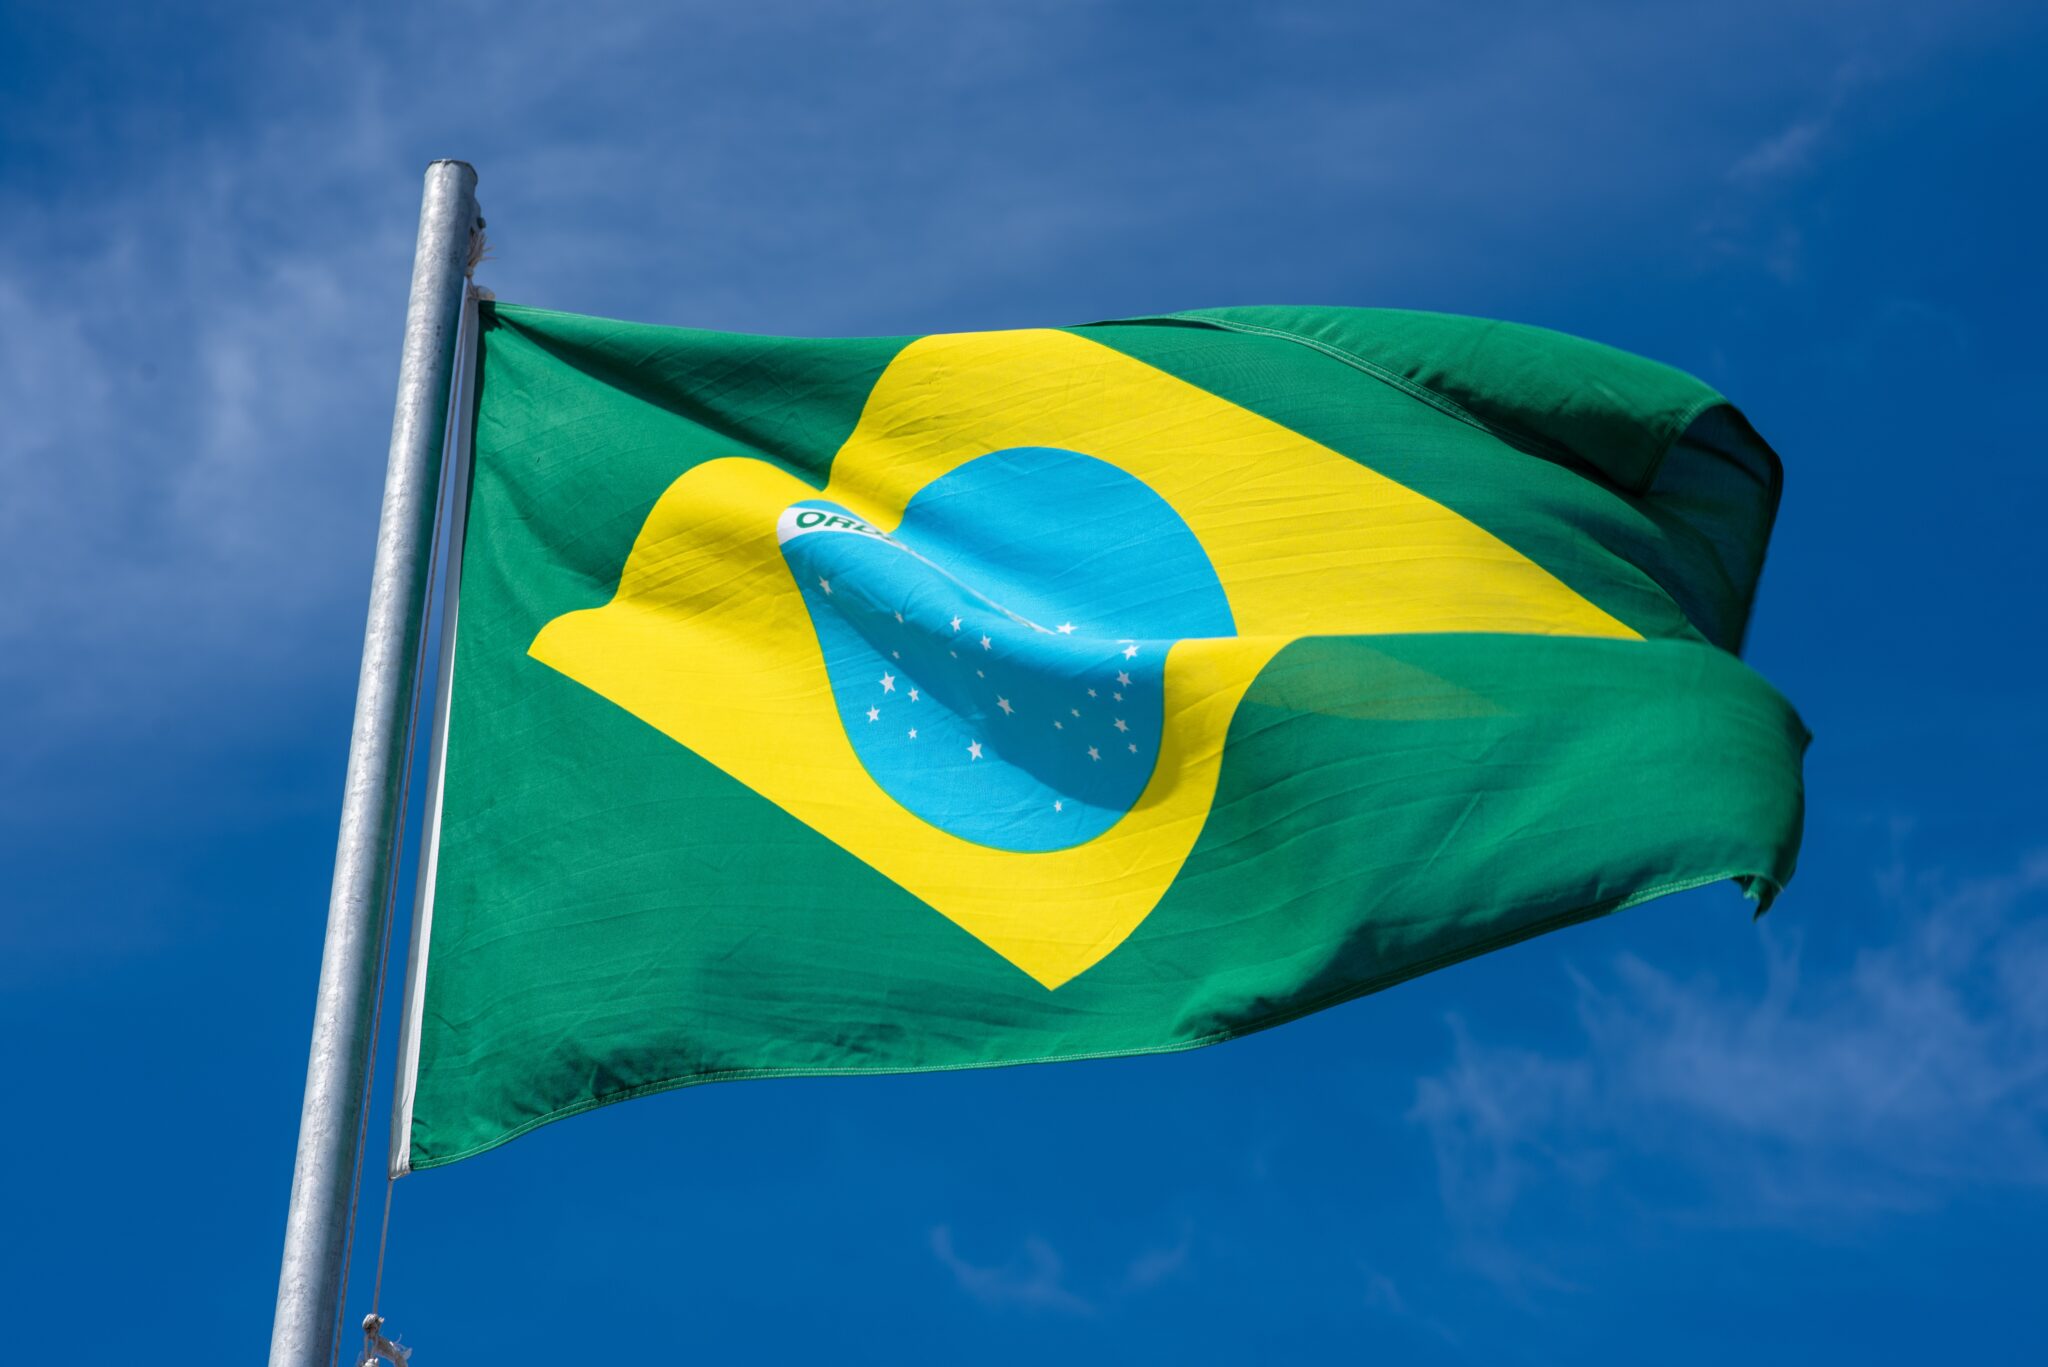 Brazilian flag against clear blue sky